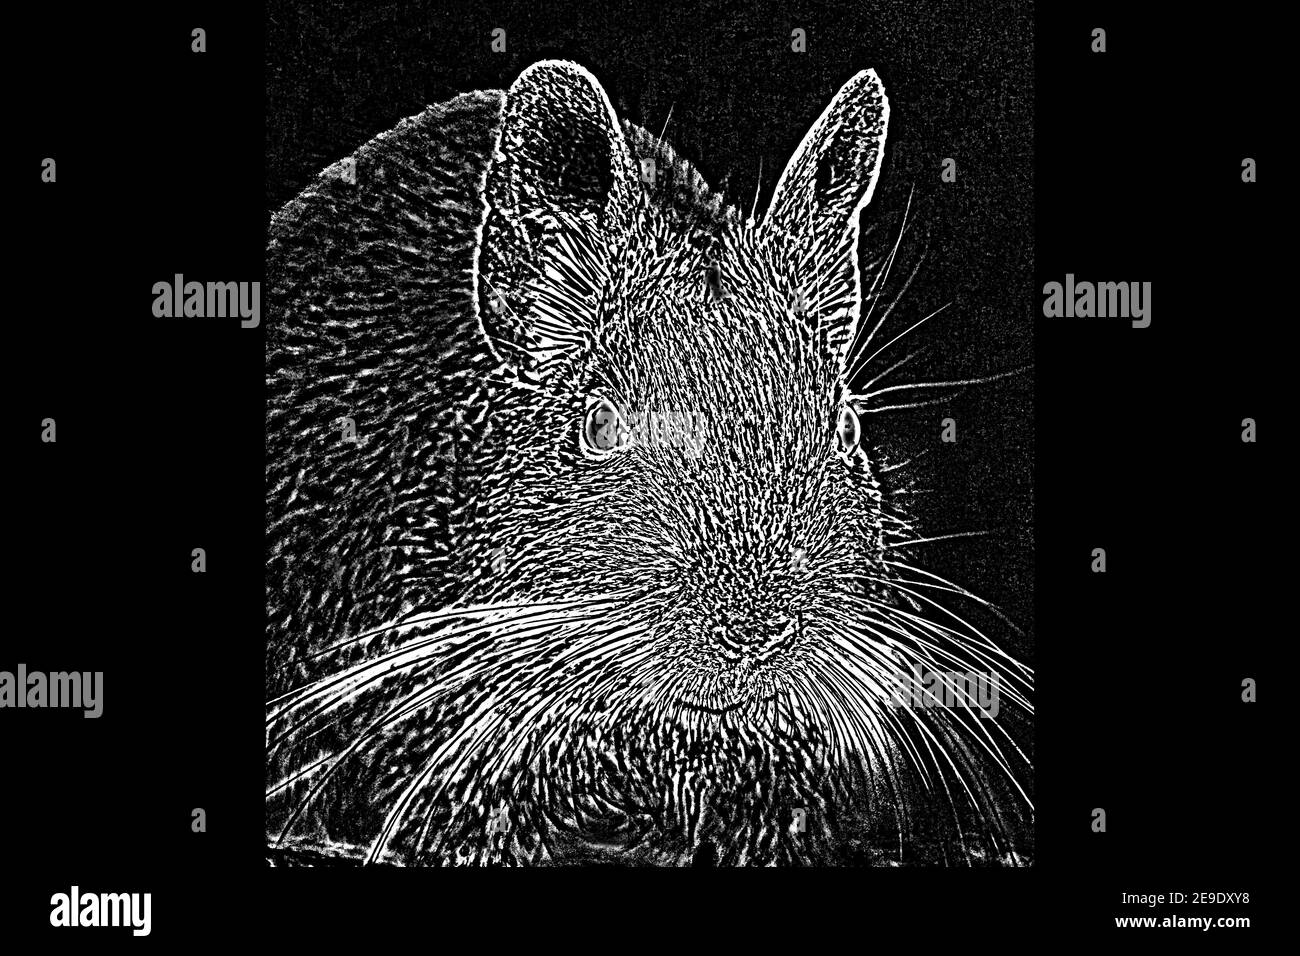 Dessin abstrait surréaliste d'une souris sur fond noir Banque D'Images